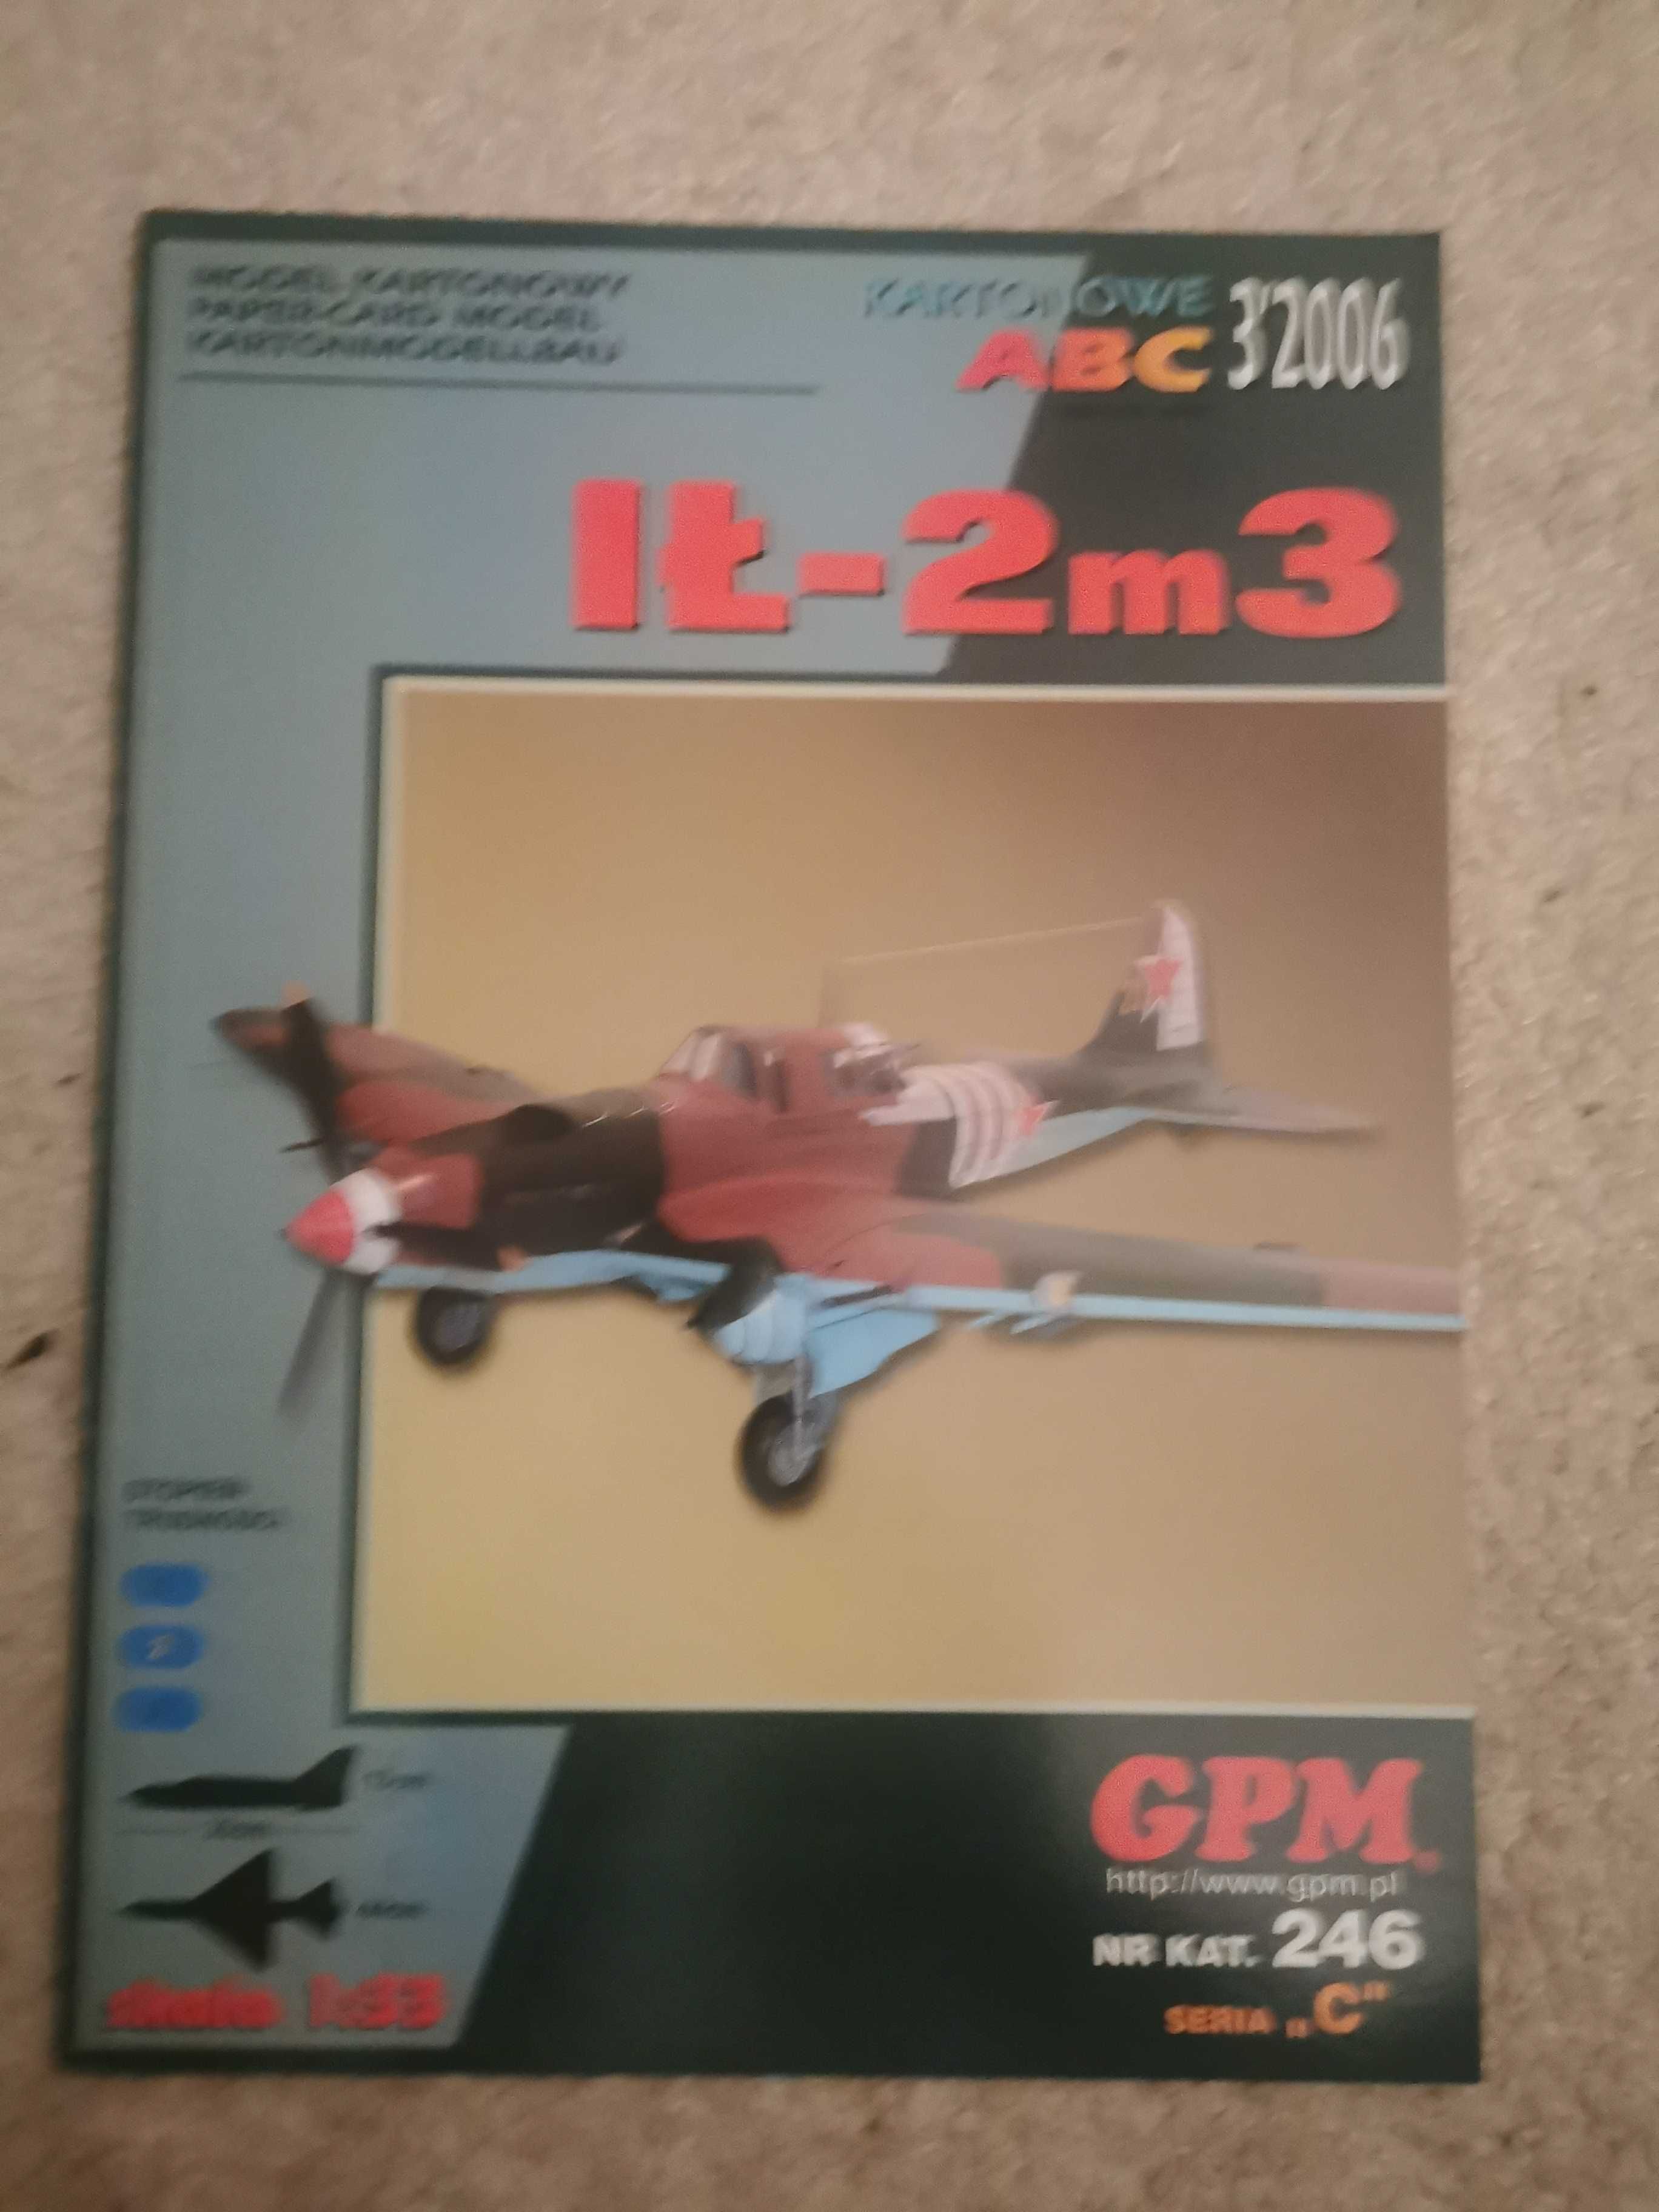 Model kartonowy GPM Ił-2m3